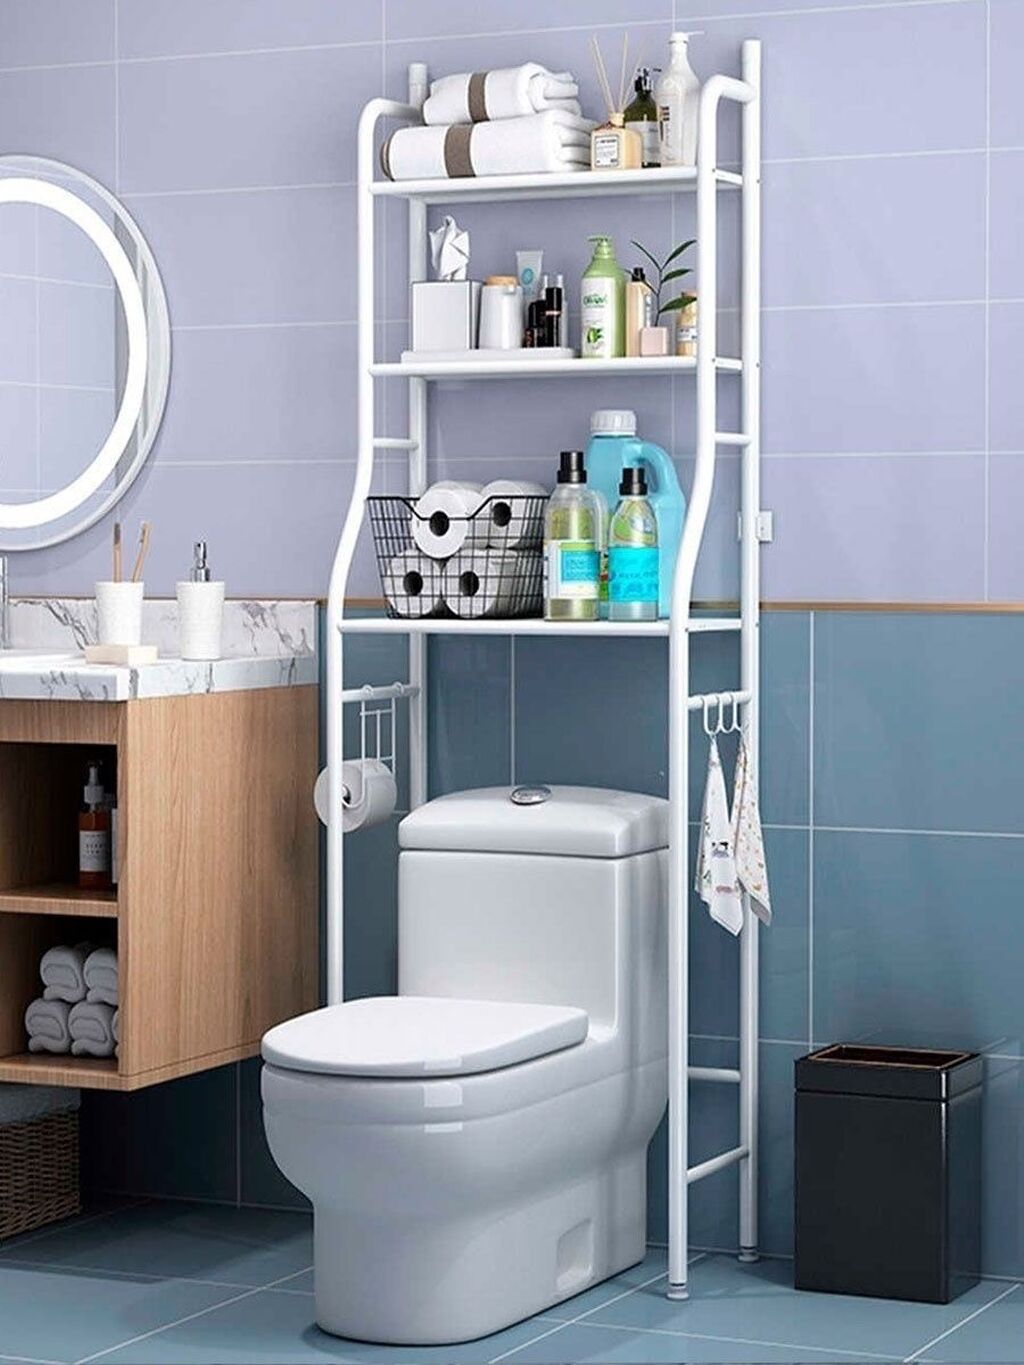 Как обеспечить ванную комнату полками без сверления стен: простое решение